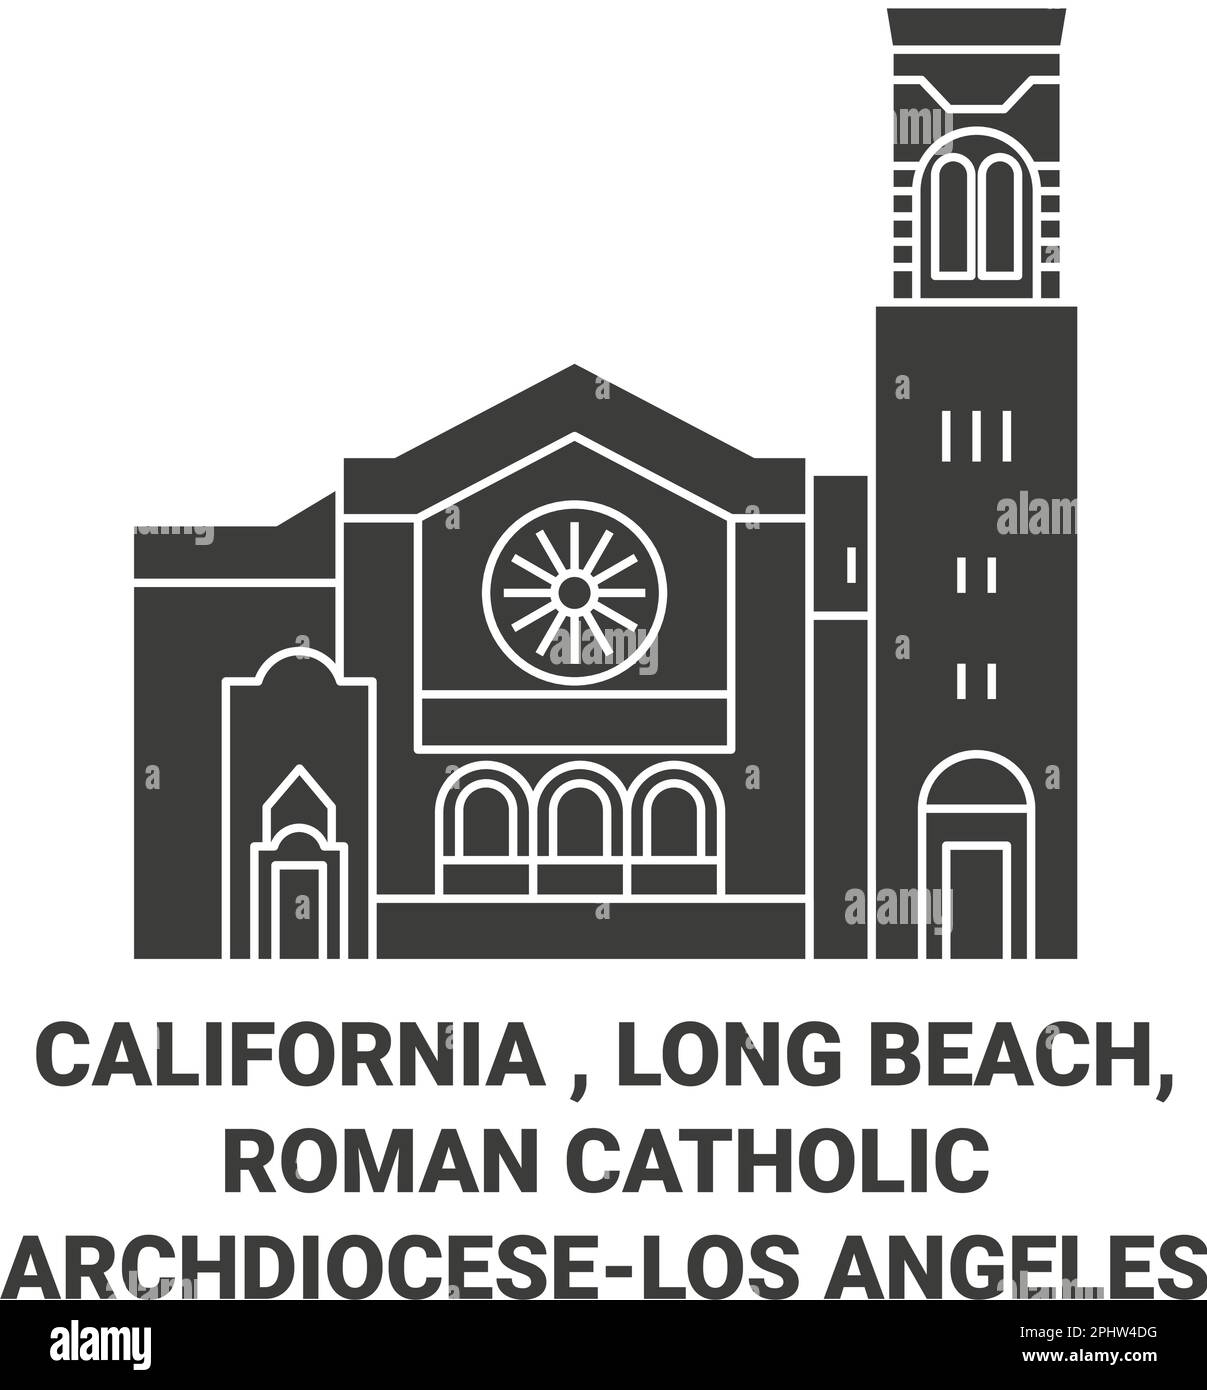 USA, Kalifornien, Long Beach, römisch-katholische Erzdiözeselos Angeles reisen als Vektorbild Stock Vektor